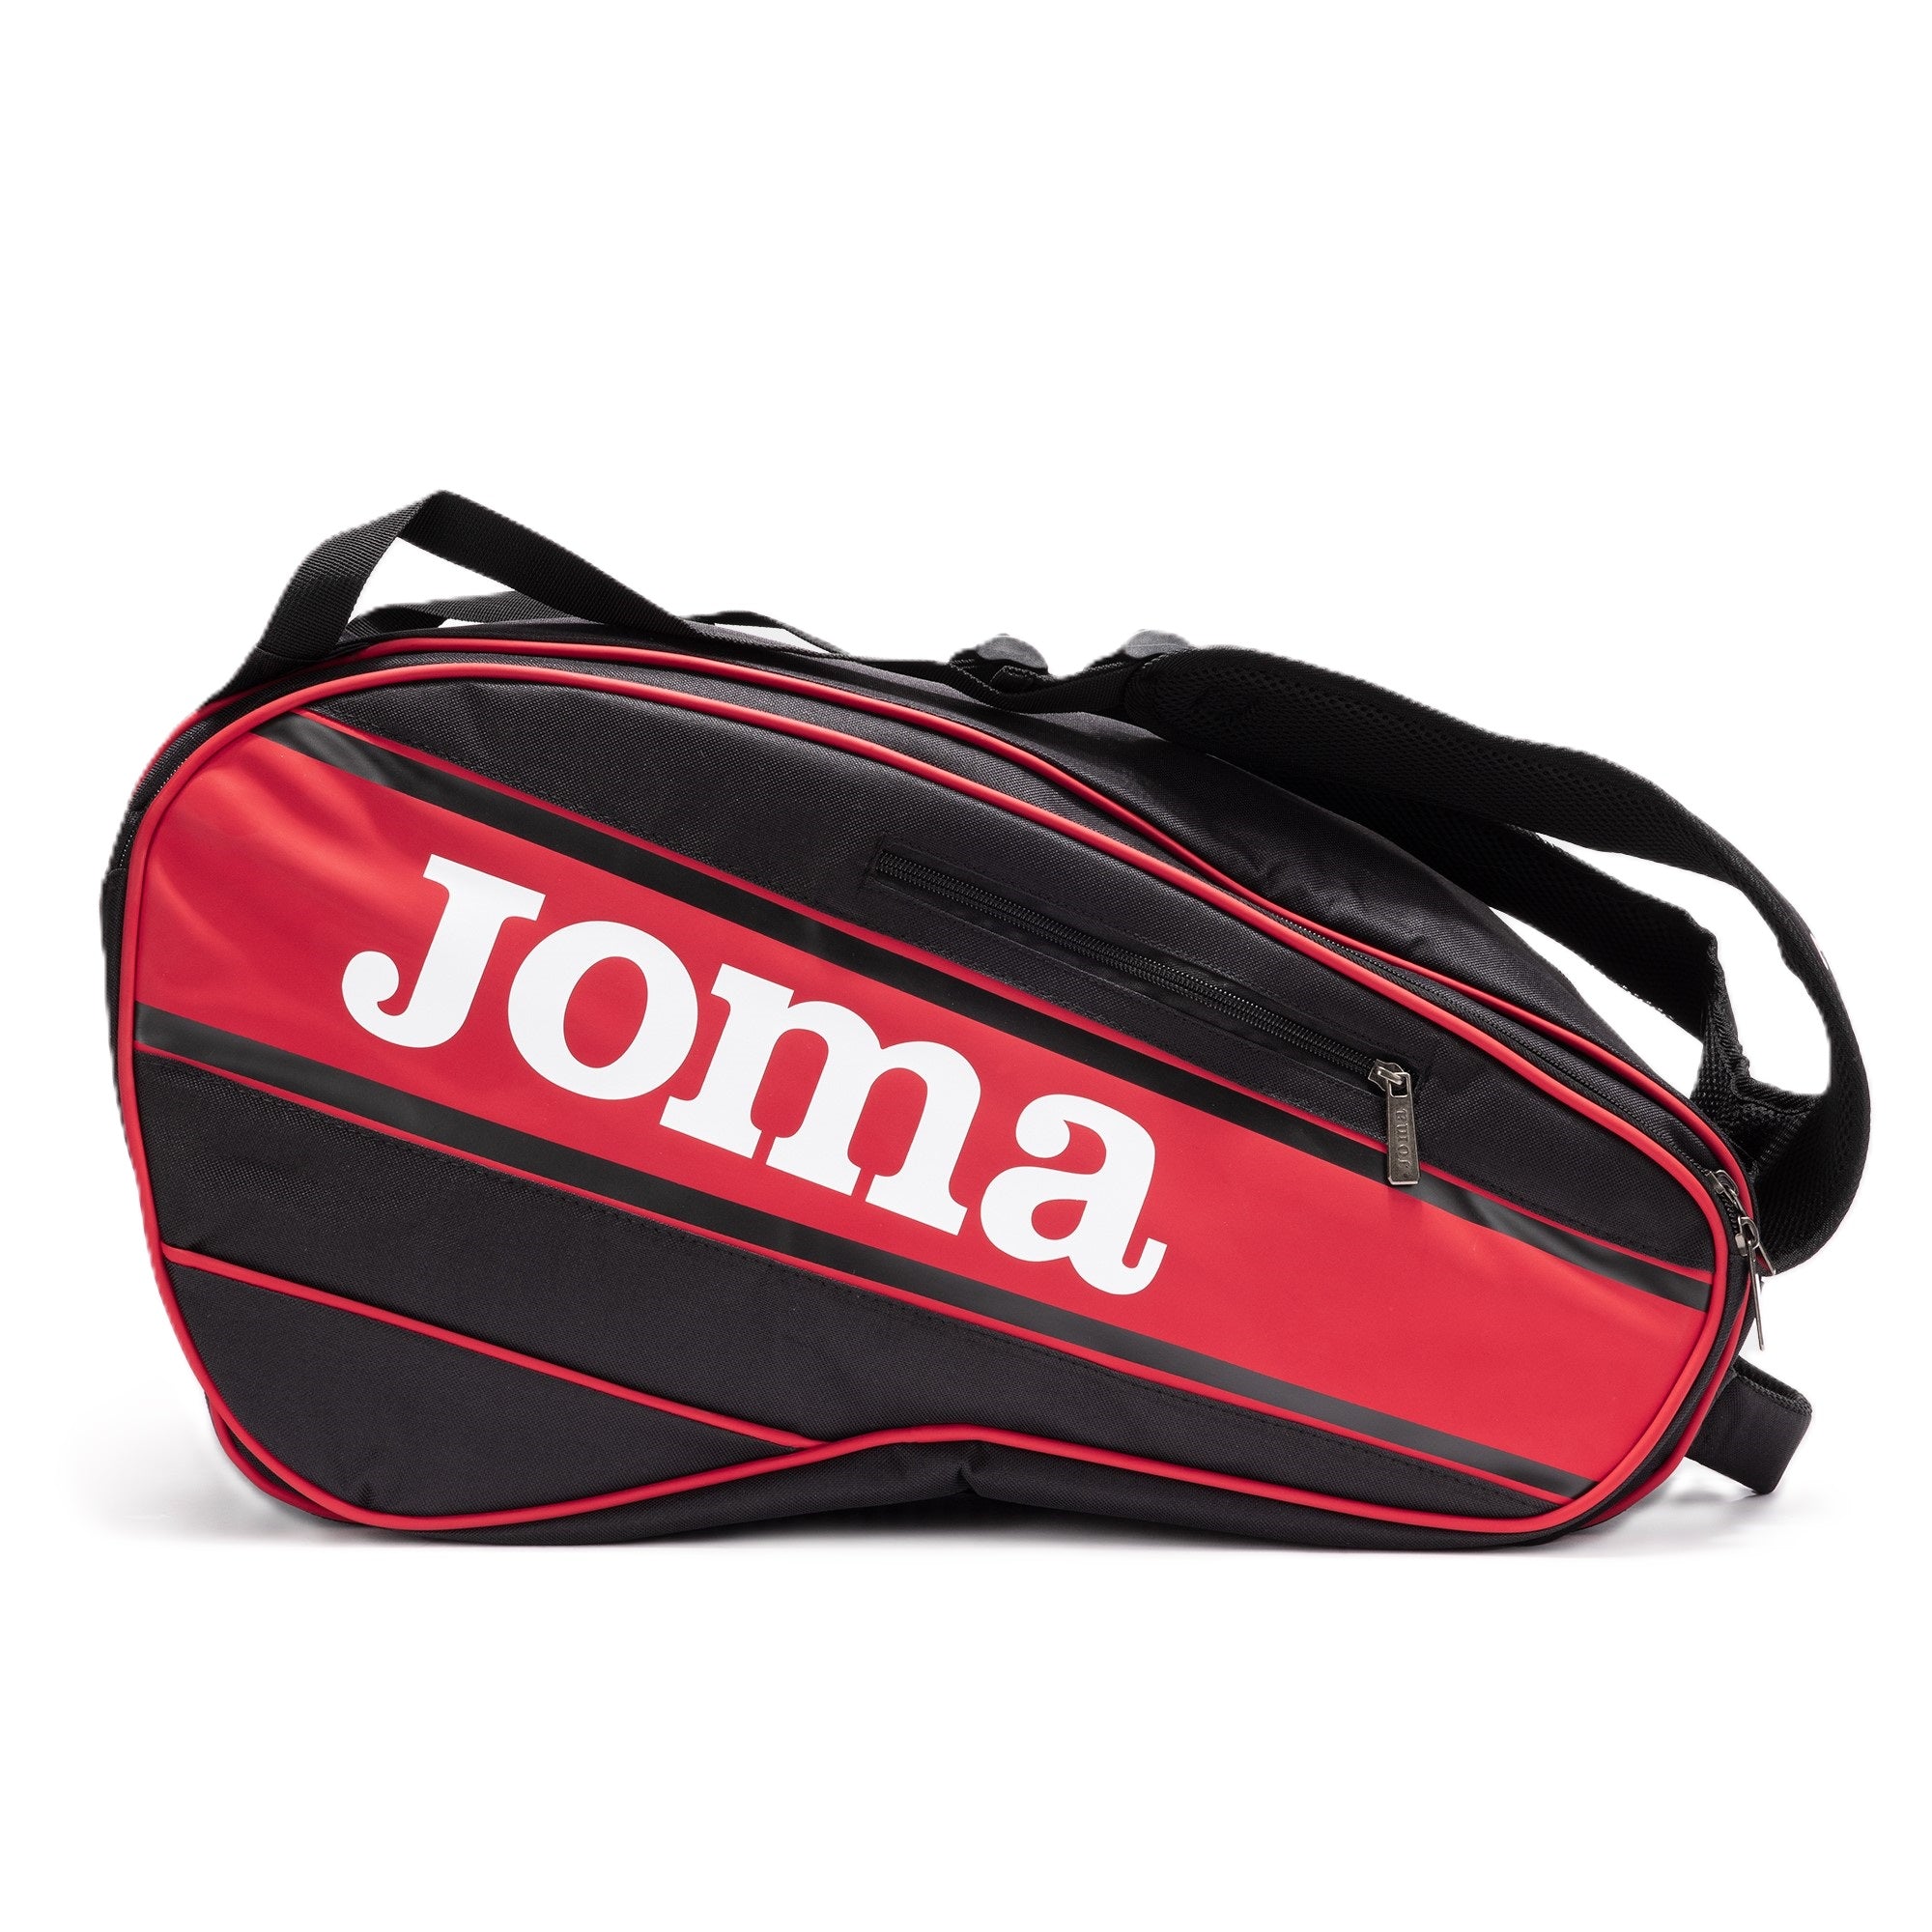 Joma Gold Pro padel bag